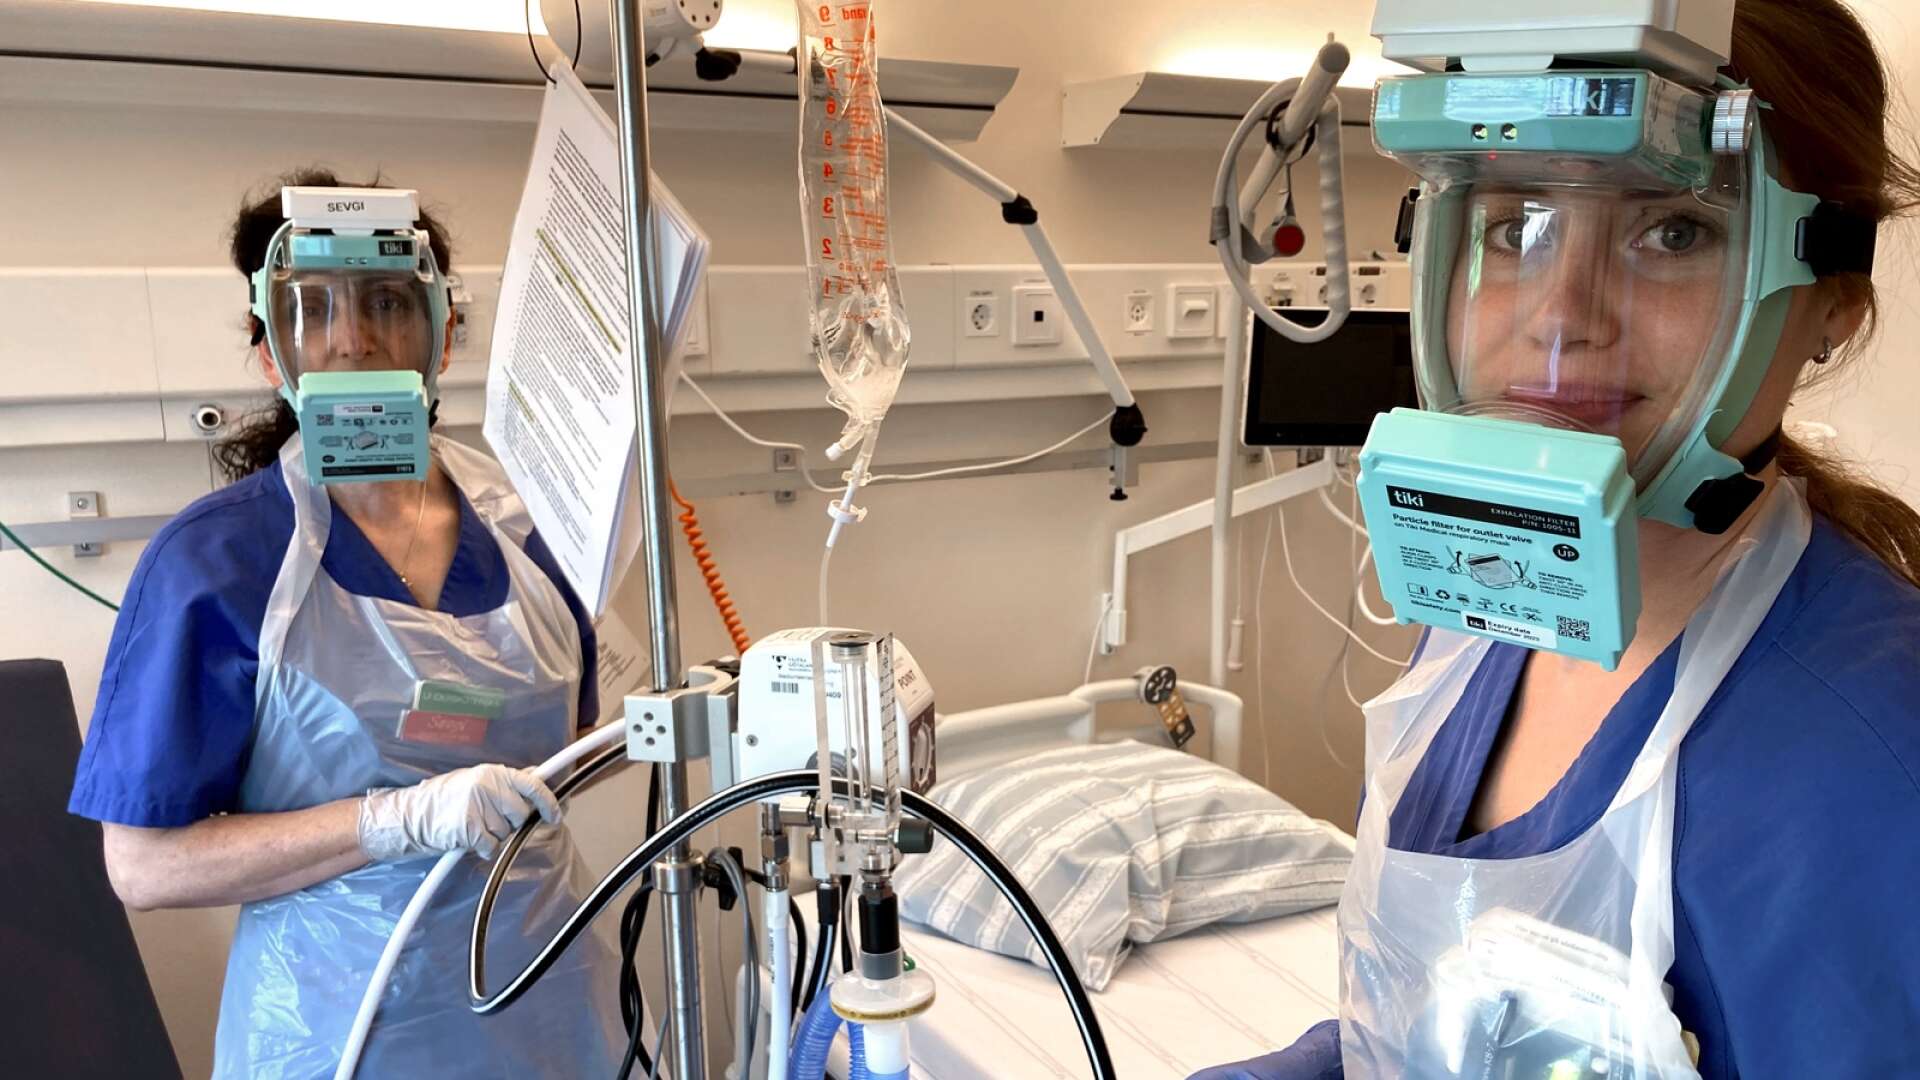 För snart ett år sedan när bilden togs på infektionskliniken på Skaraborgs sjukhus, så var det betydligt fler patienter jämfört med i dag, som var inneliggande med covid-19. Men fortfarande vårdas covidpatienter på sjukhuset med högflödessyrgas.